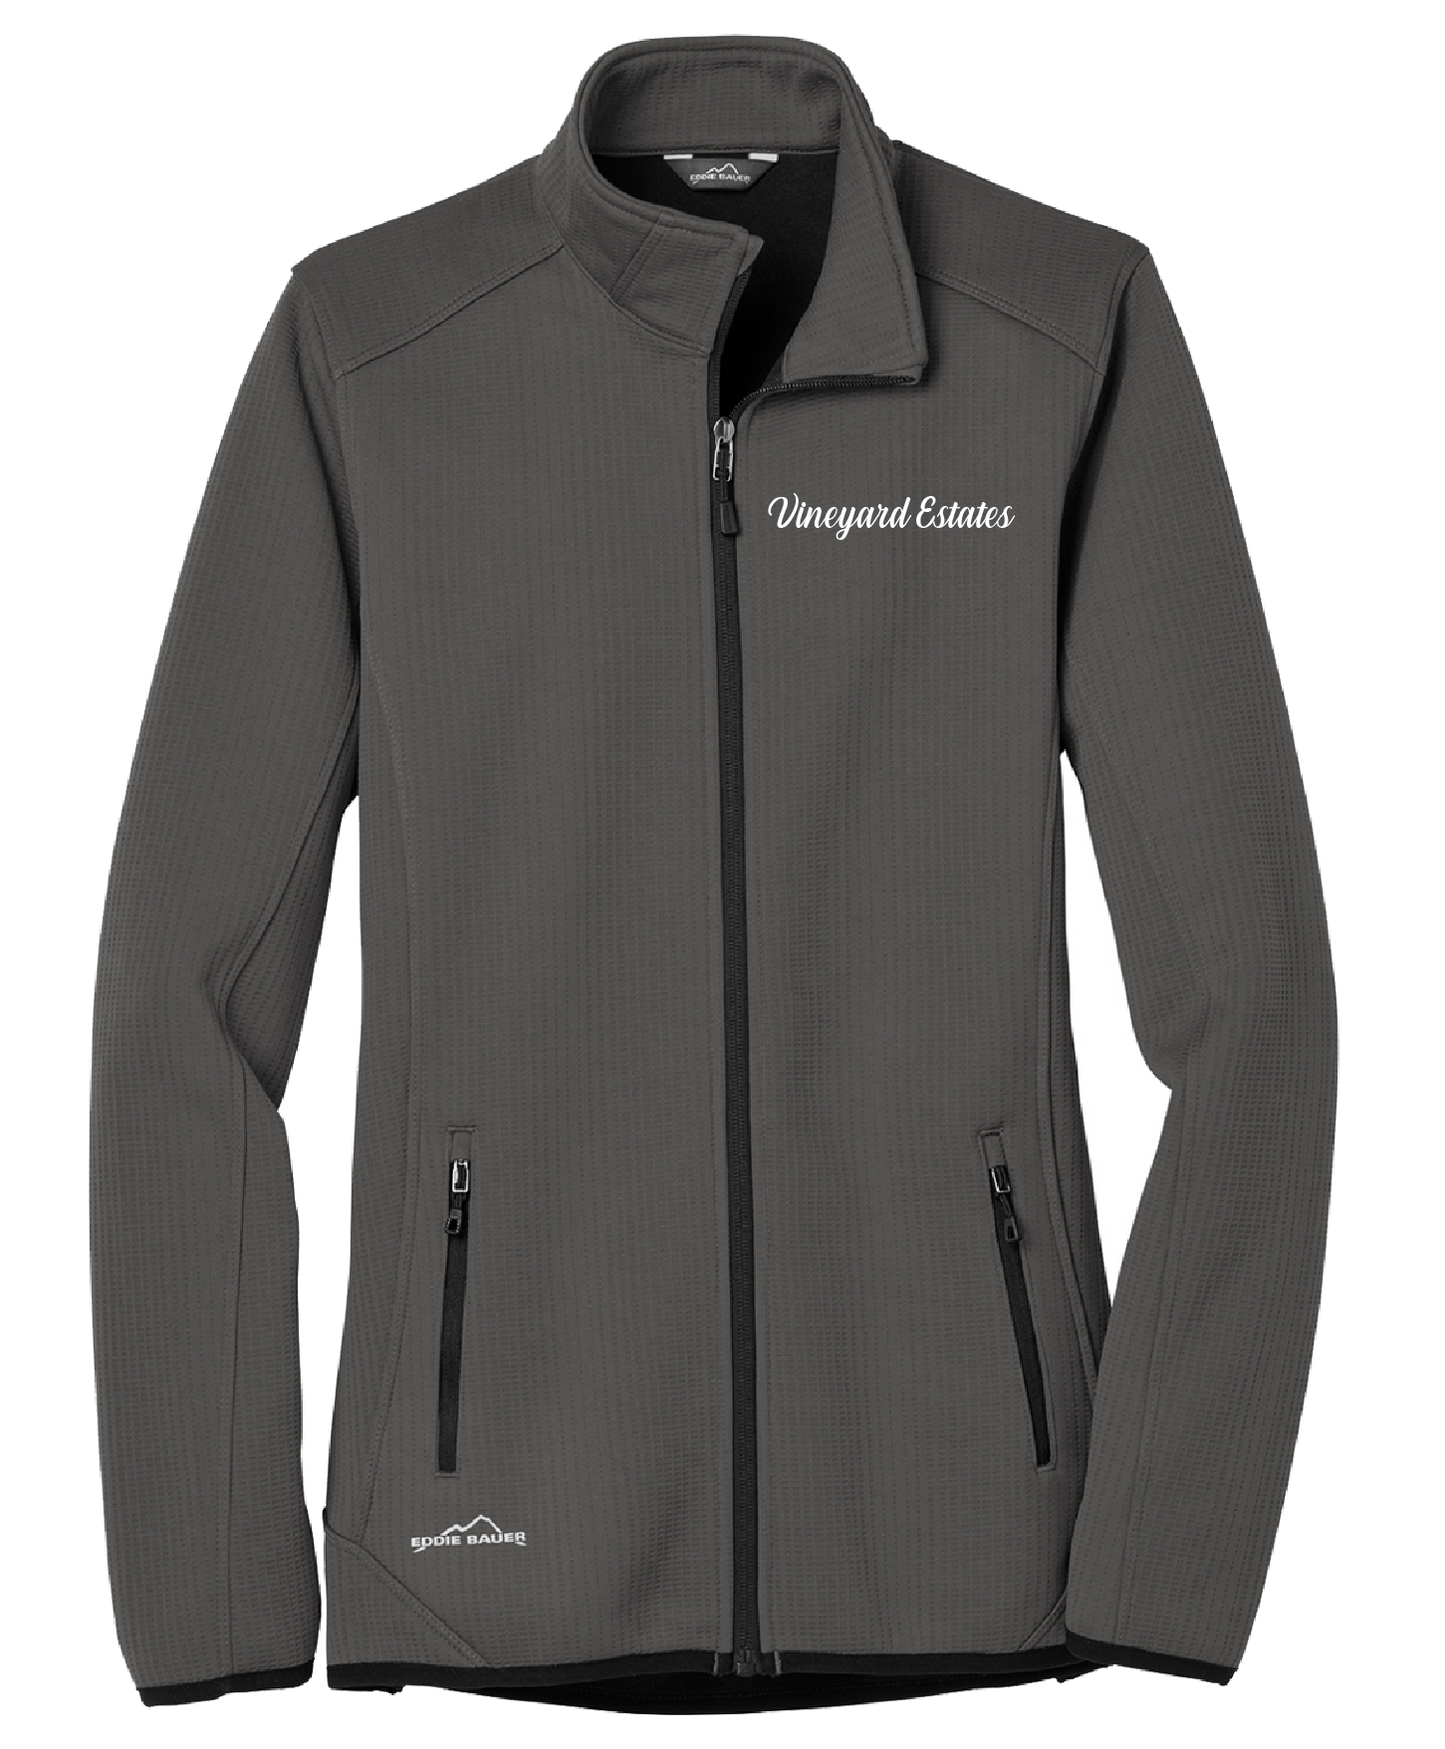 Vineyard Estates - Ladies - Eddie Bauer ® Dash Full-Zip Fleece Jacket